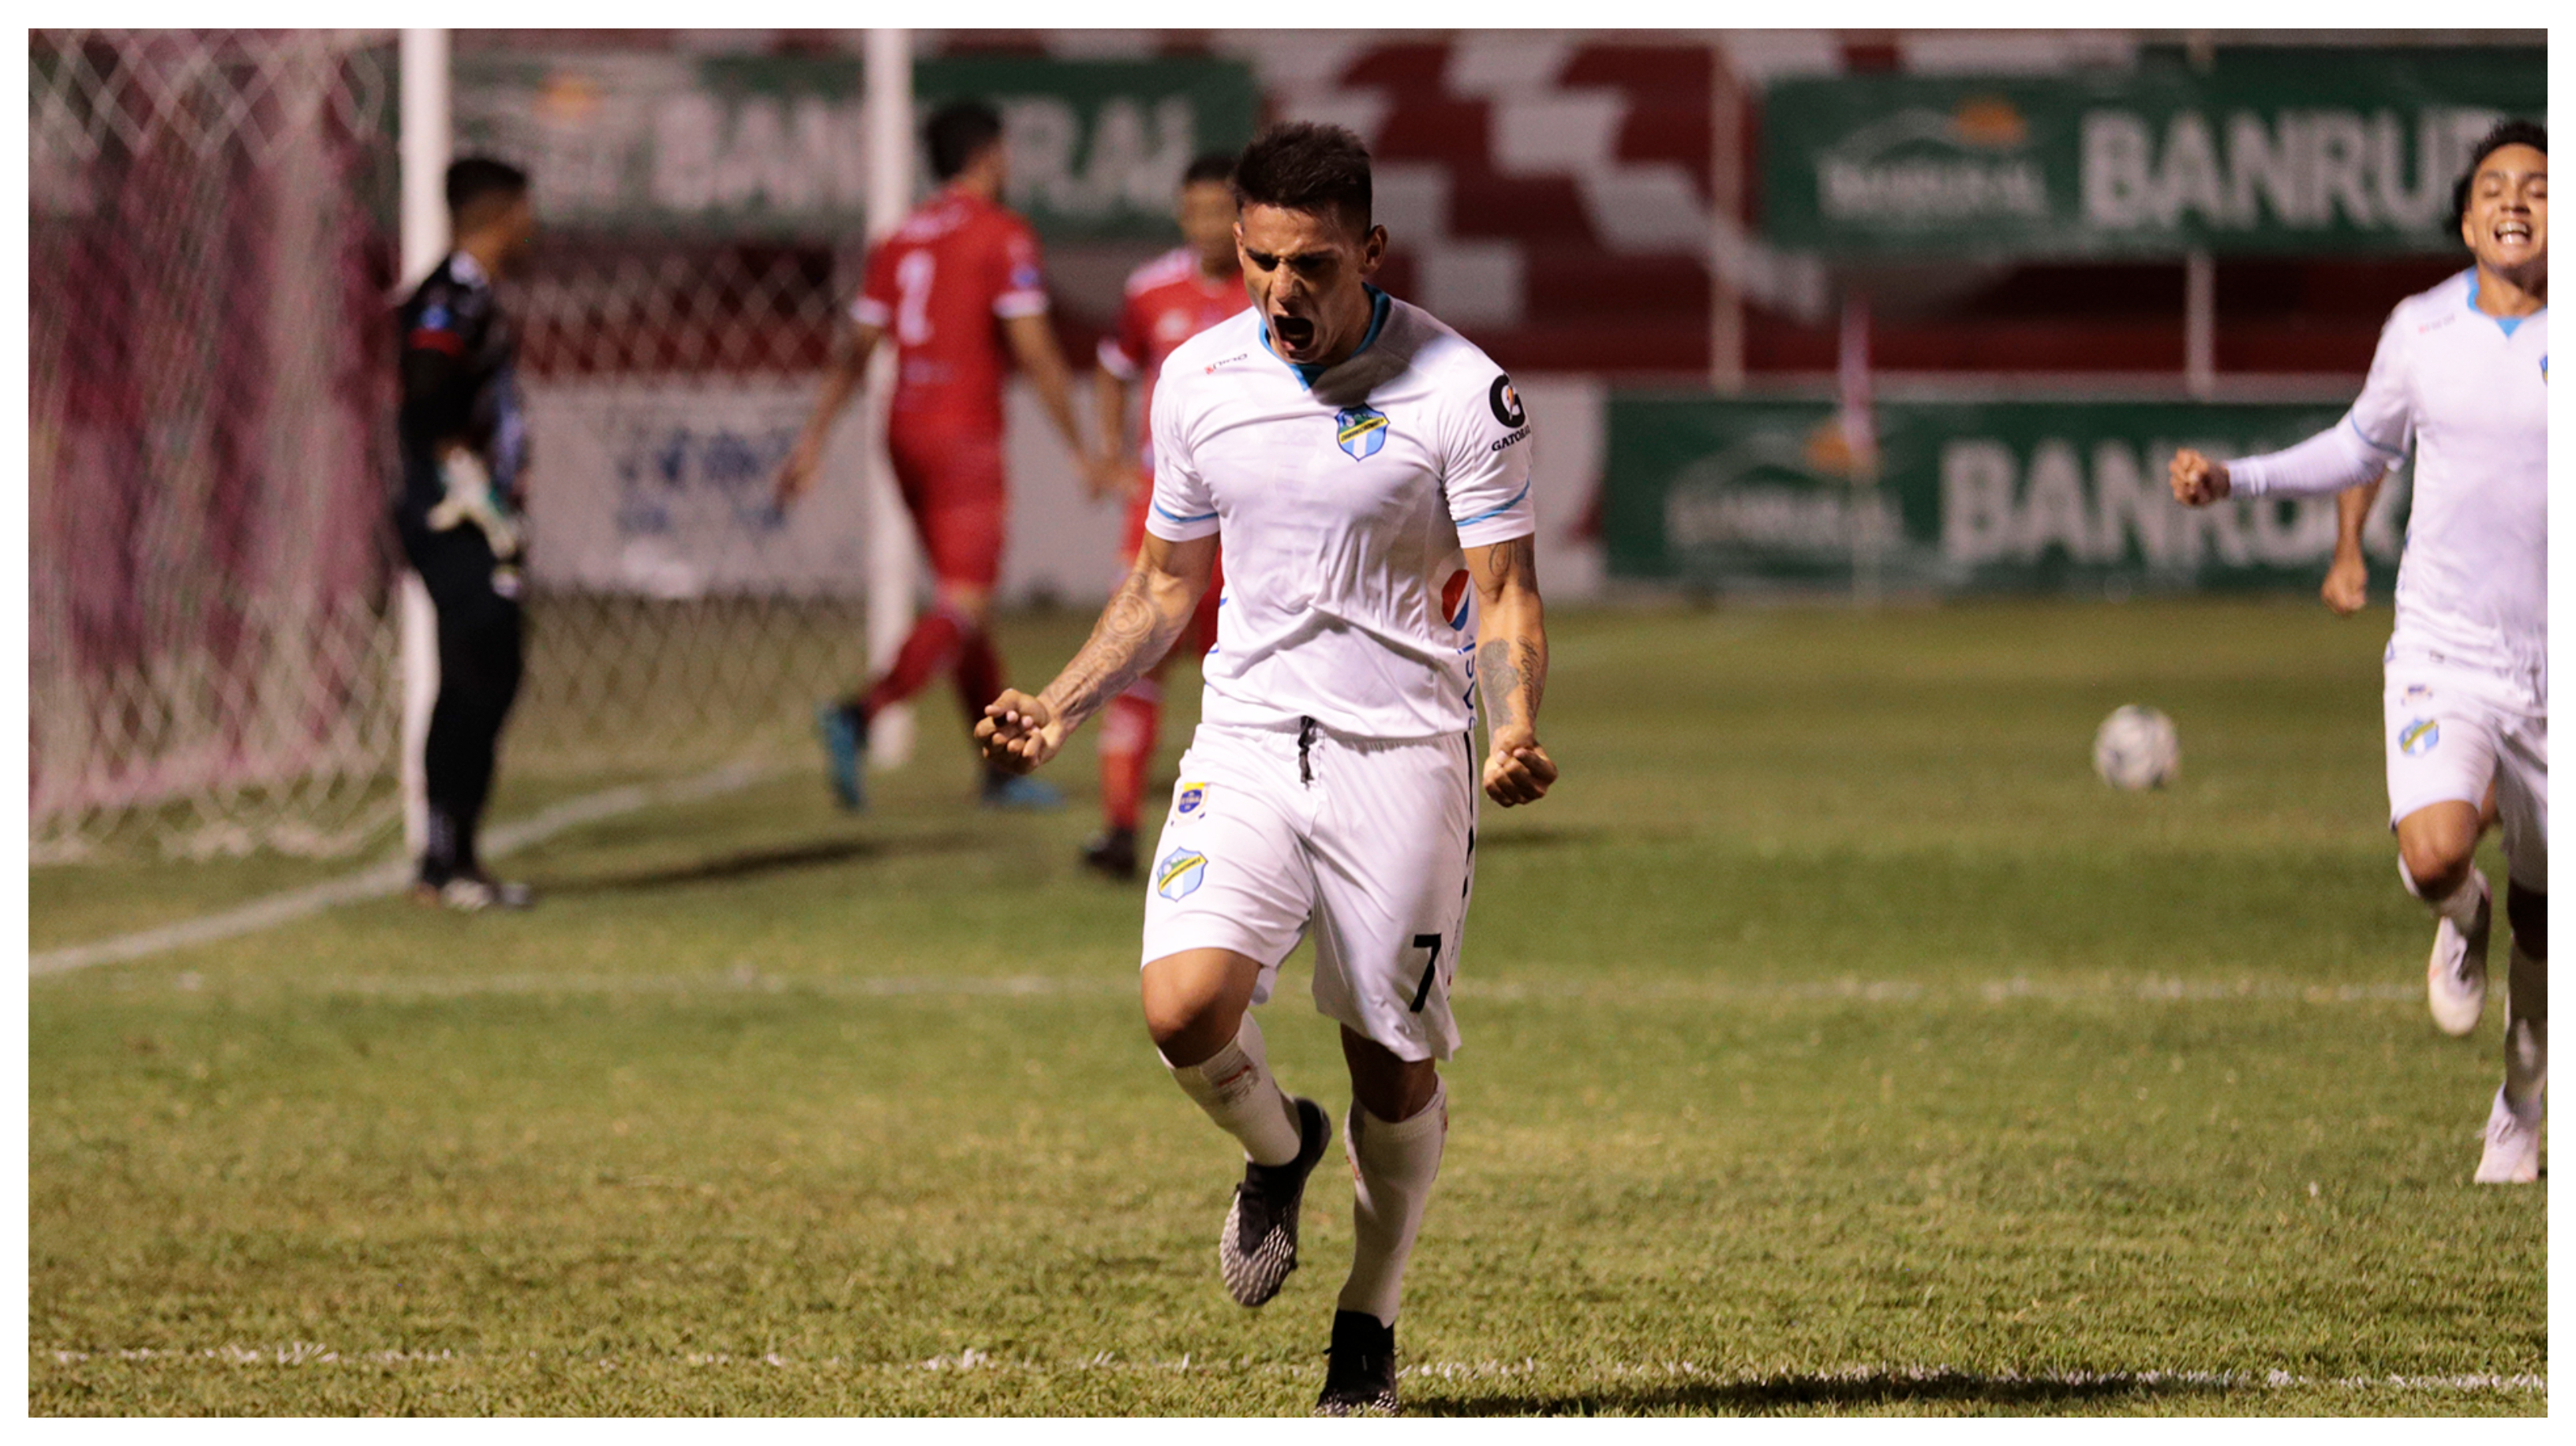 El delantero constarricense, Rafael Andrés Lezcano, anotó un gol ante Sacachispas. Foto Prensa Libre: Cortesía Club Comunicaciones.